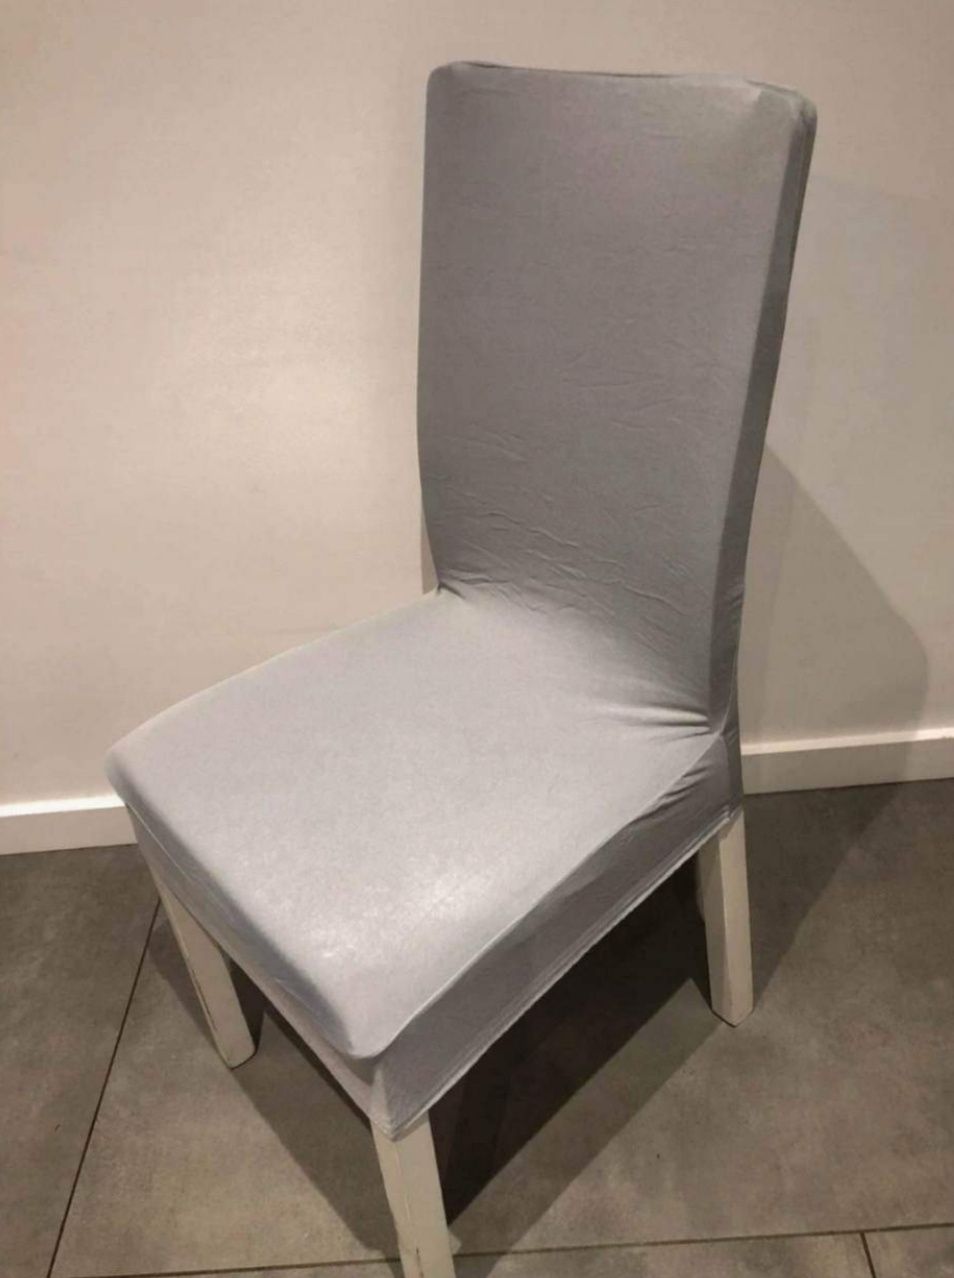 Pokrowce na krzesła elastyczny materiał uniwersalny materiał.